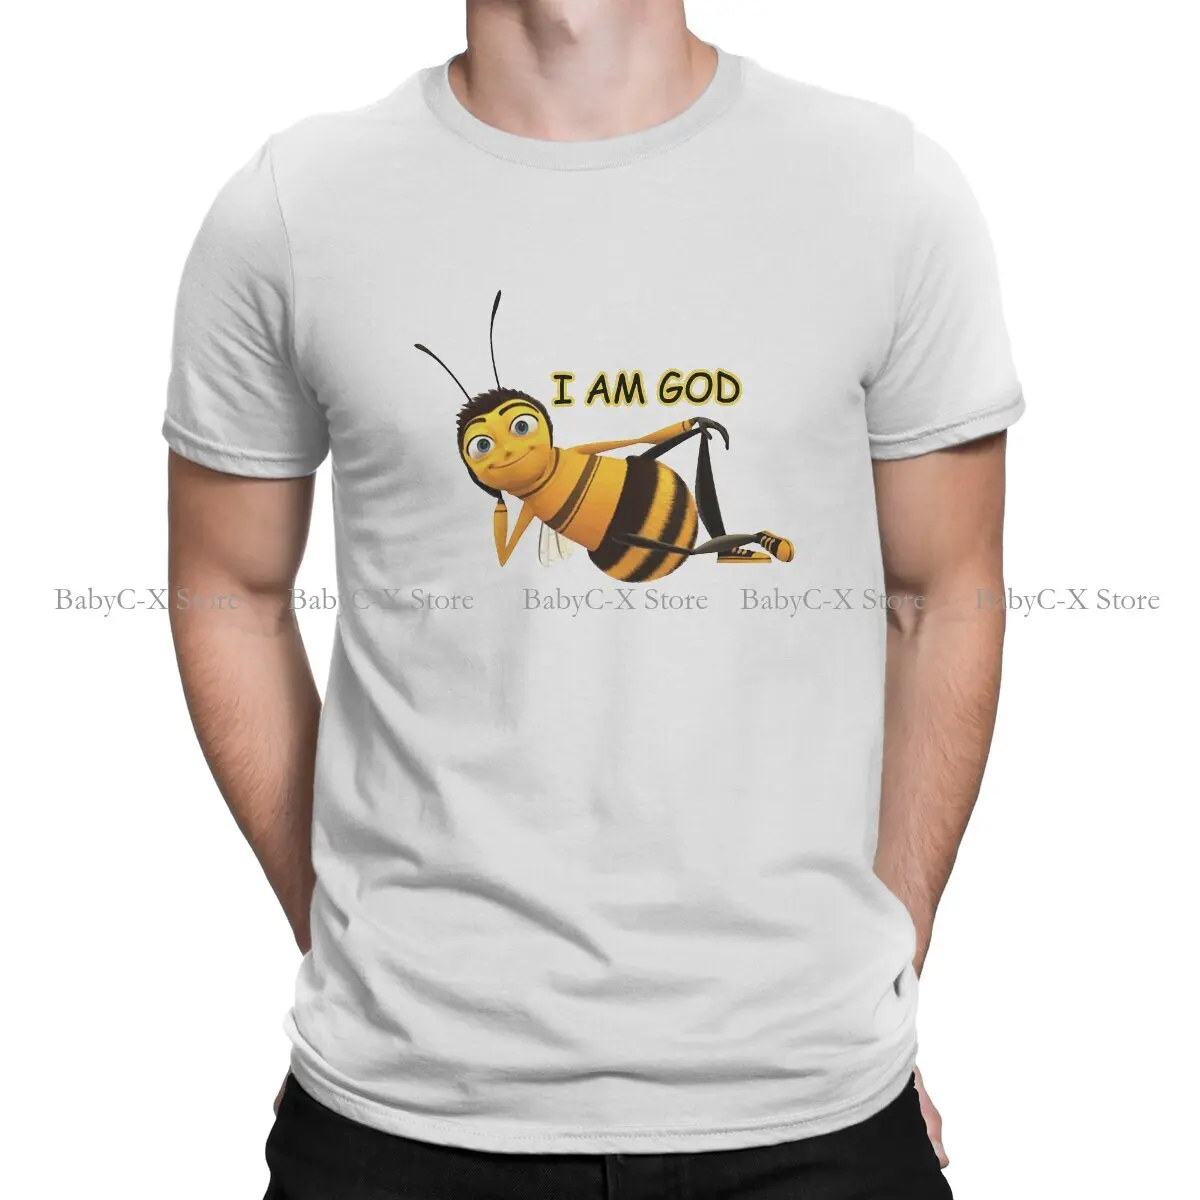 Я БОГ, специальная футболка из полиэстера с героями мультфильма Bee Movie Барри Би Байсона, удобная подарочная одежда нового дизайна, футболки разного размера